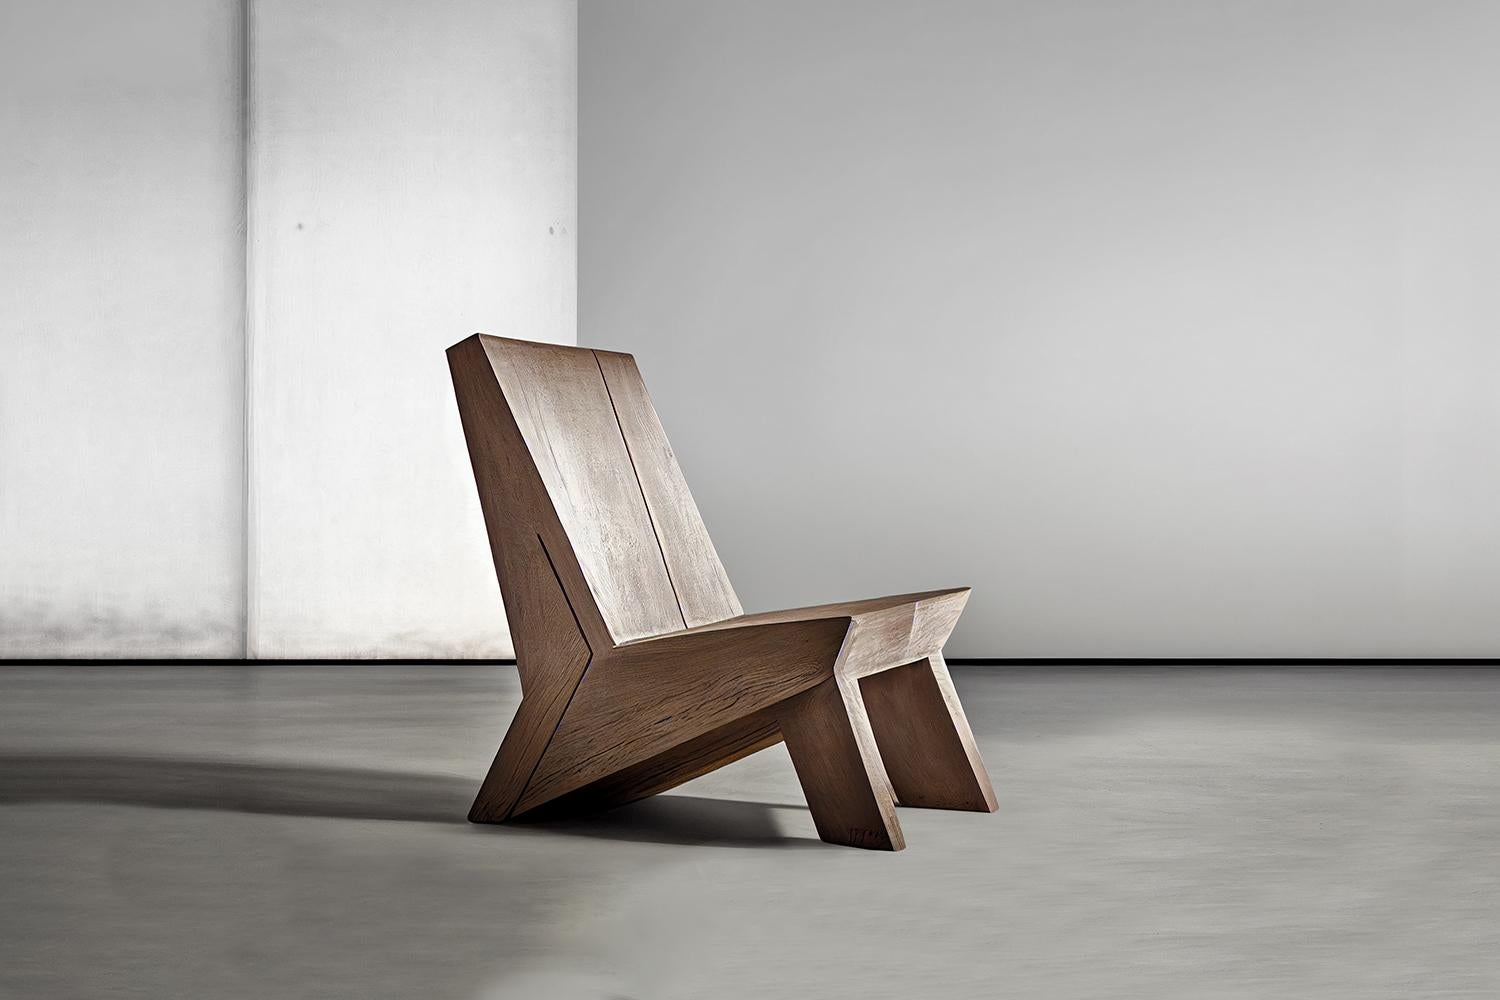 Minimalistischer, brutalistischer Lounge-Sessel, Sessel aus gebranntem Eichenholz von NONO 

Brutalistische Stühle zeigen eine starke, aber passive Präsenz mit minimalistischem Design, das die reichen Texturen des natürlichen Eichenholzes